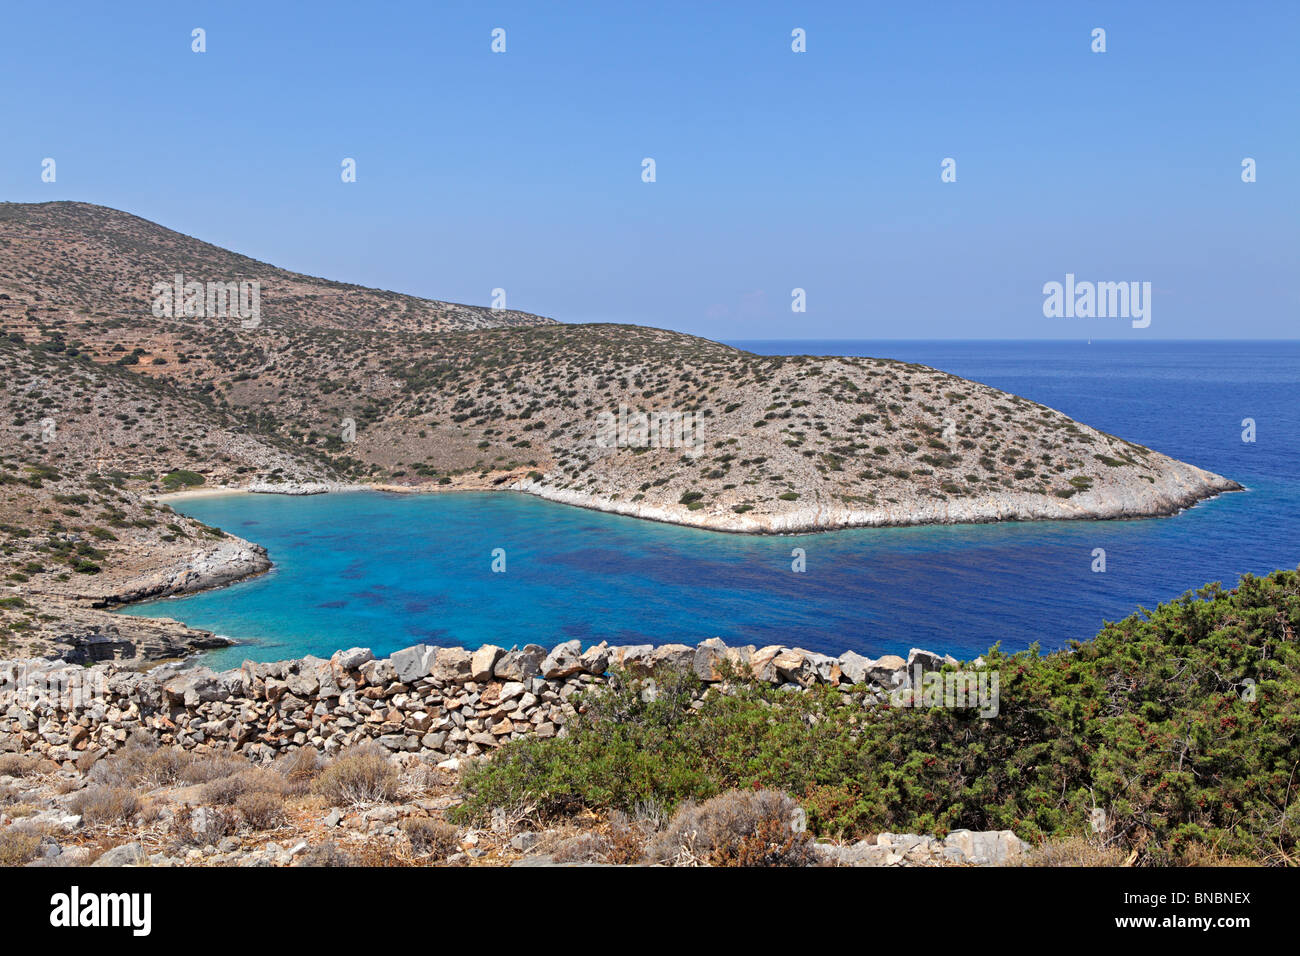 Bahía idílica en la costa oeste de la isla de Iraklia, Cyclades, islas del Egeo, Grecia Foto de stock